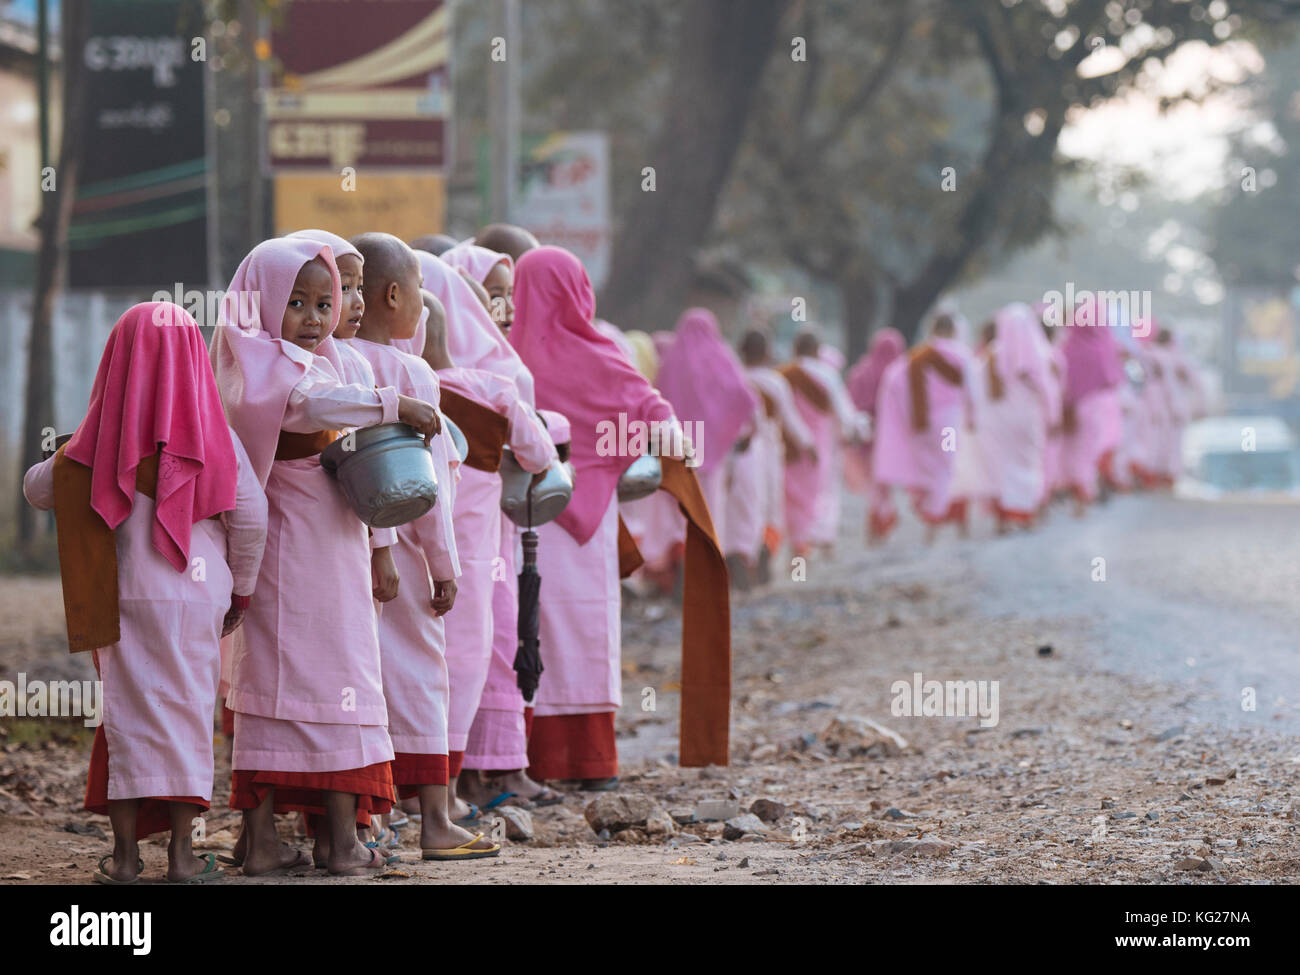 Les nonnes bouddhistes la collecte de l'aumône au petit matin près de hsipaw, shan state, Myanmar (Birmanie), l'Asie Banque D'Images